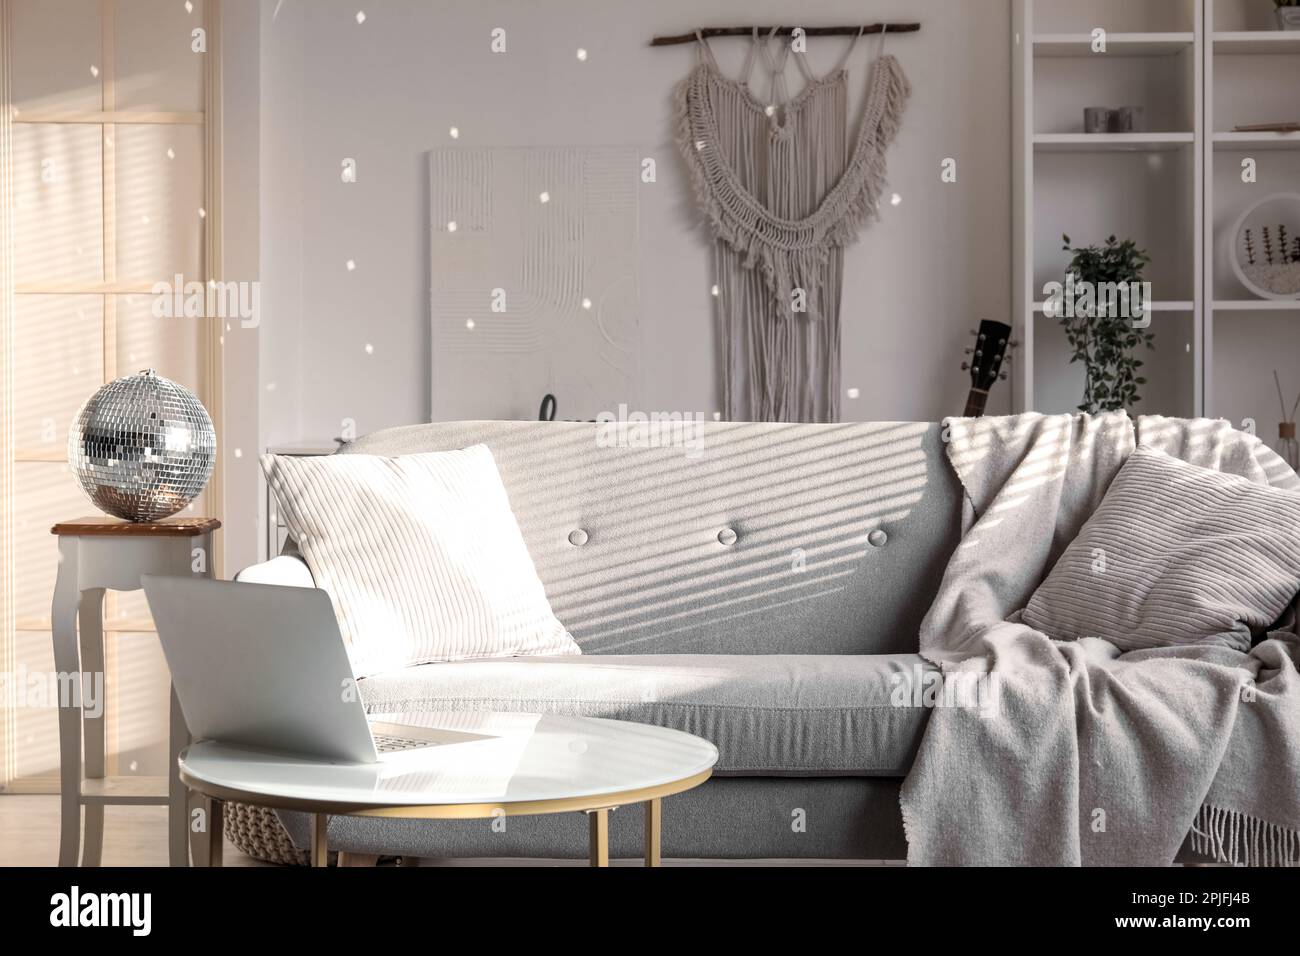 Wohnzimmereinrichtung mit Discokugel und Sofa Stockfotografie - Alamy